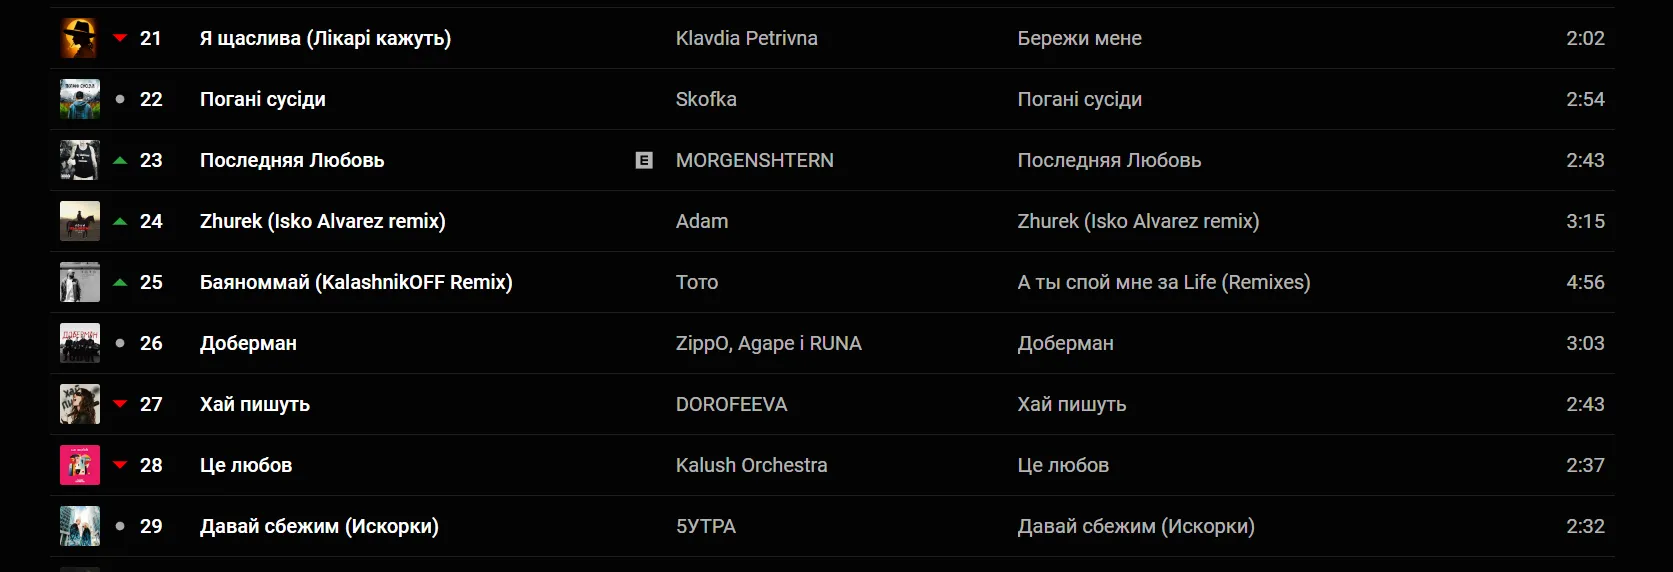 MORGENSHTERN в ТОП-100 популярных песен в Украине. Скриншот